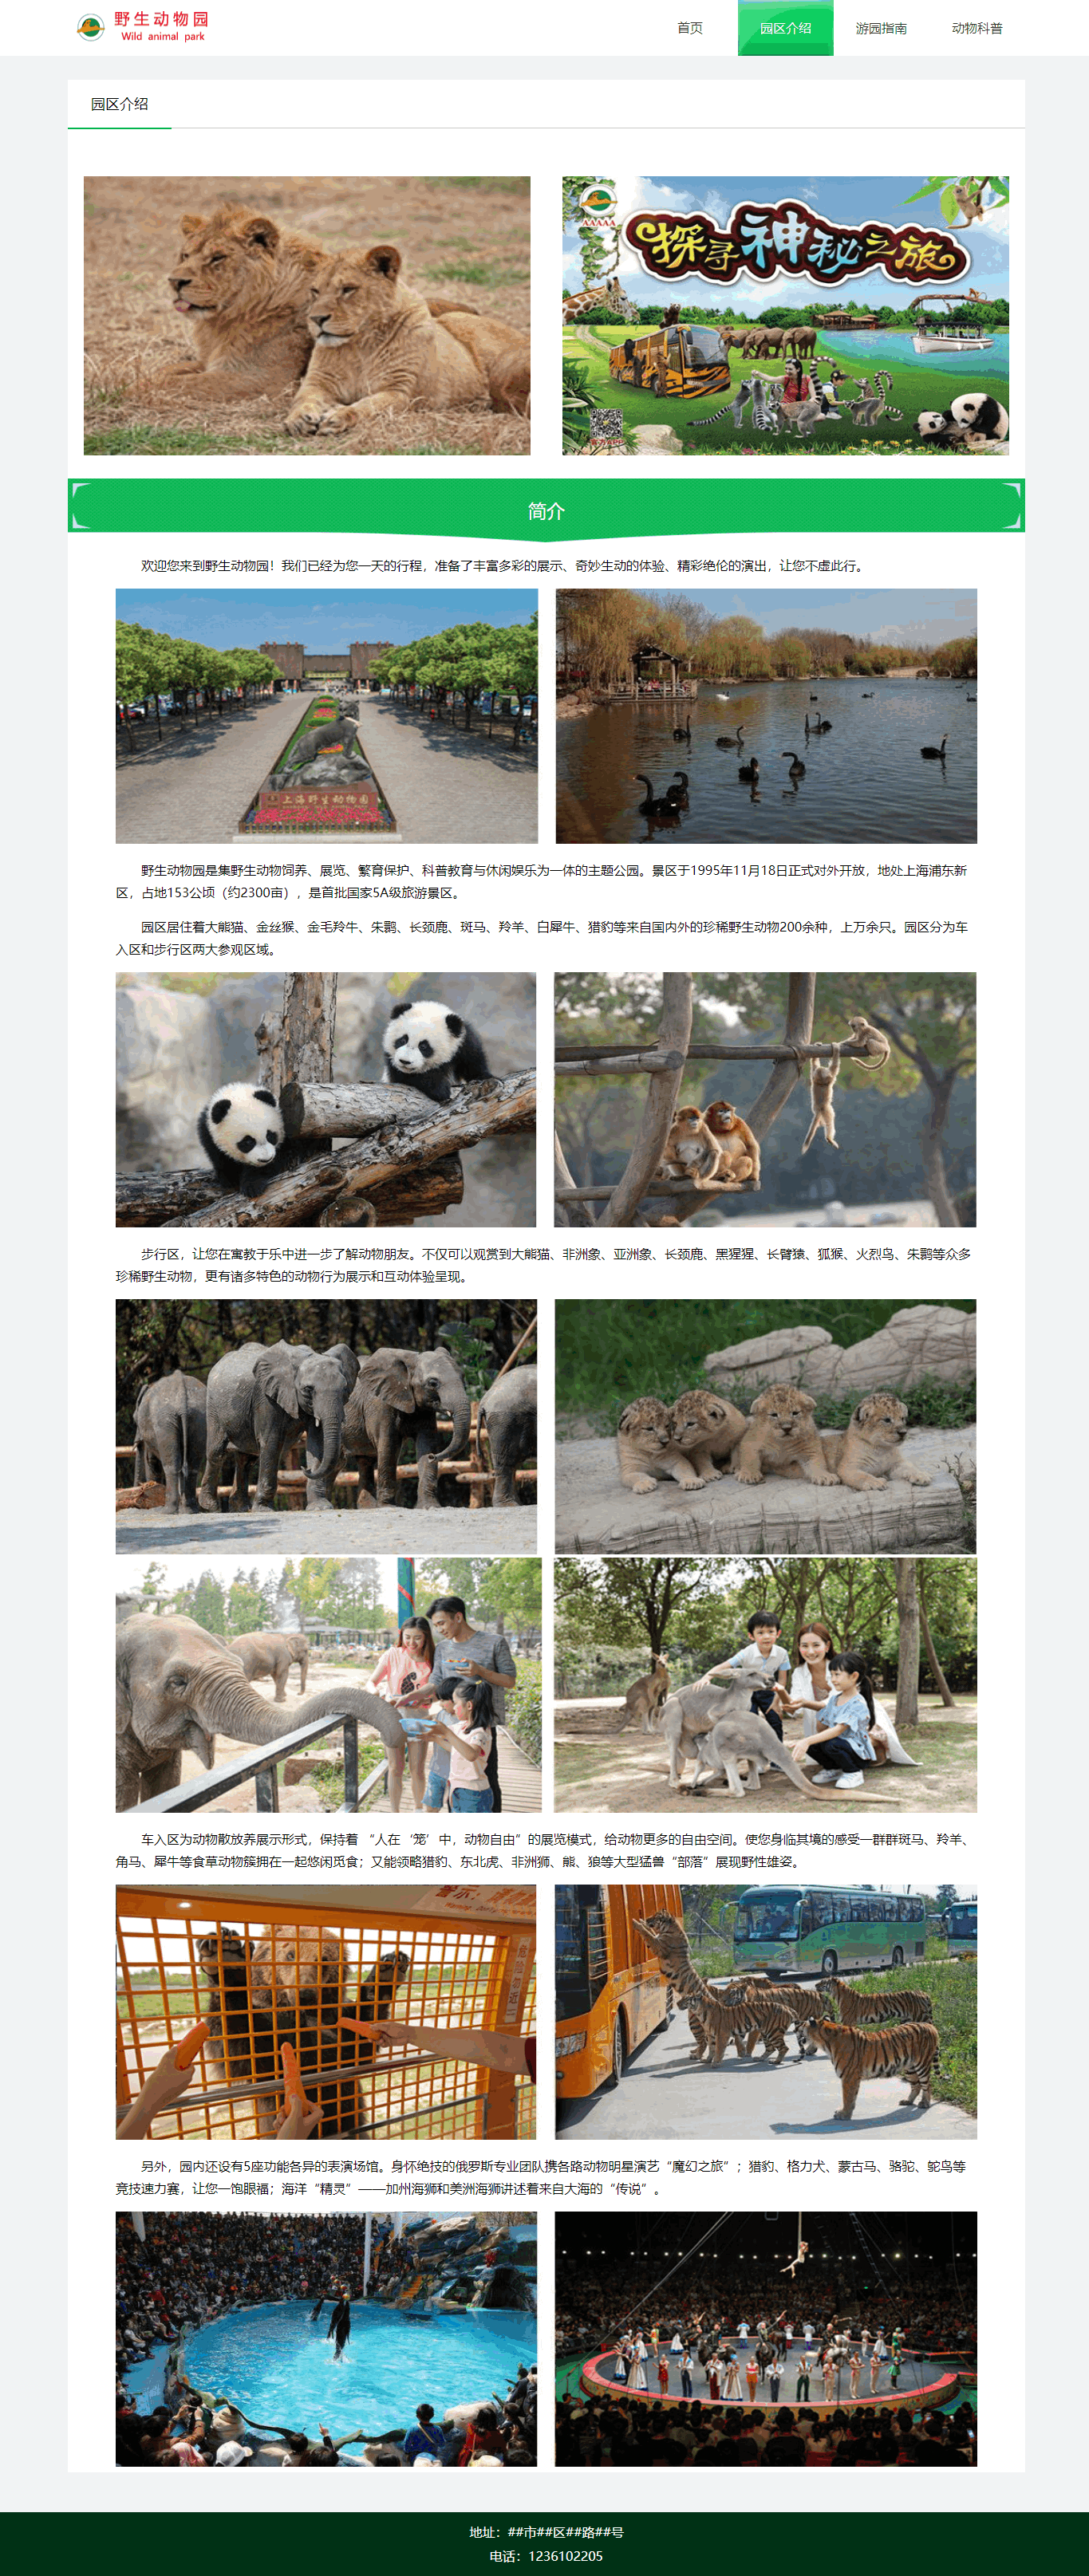 【动物类】野生动物园四页